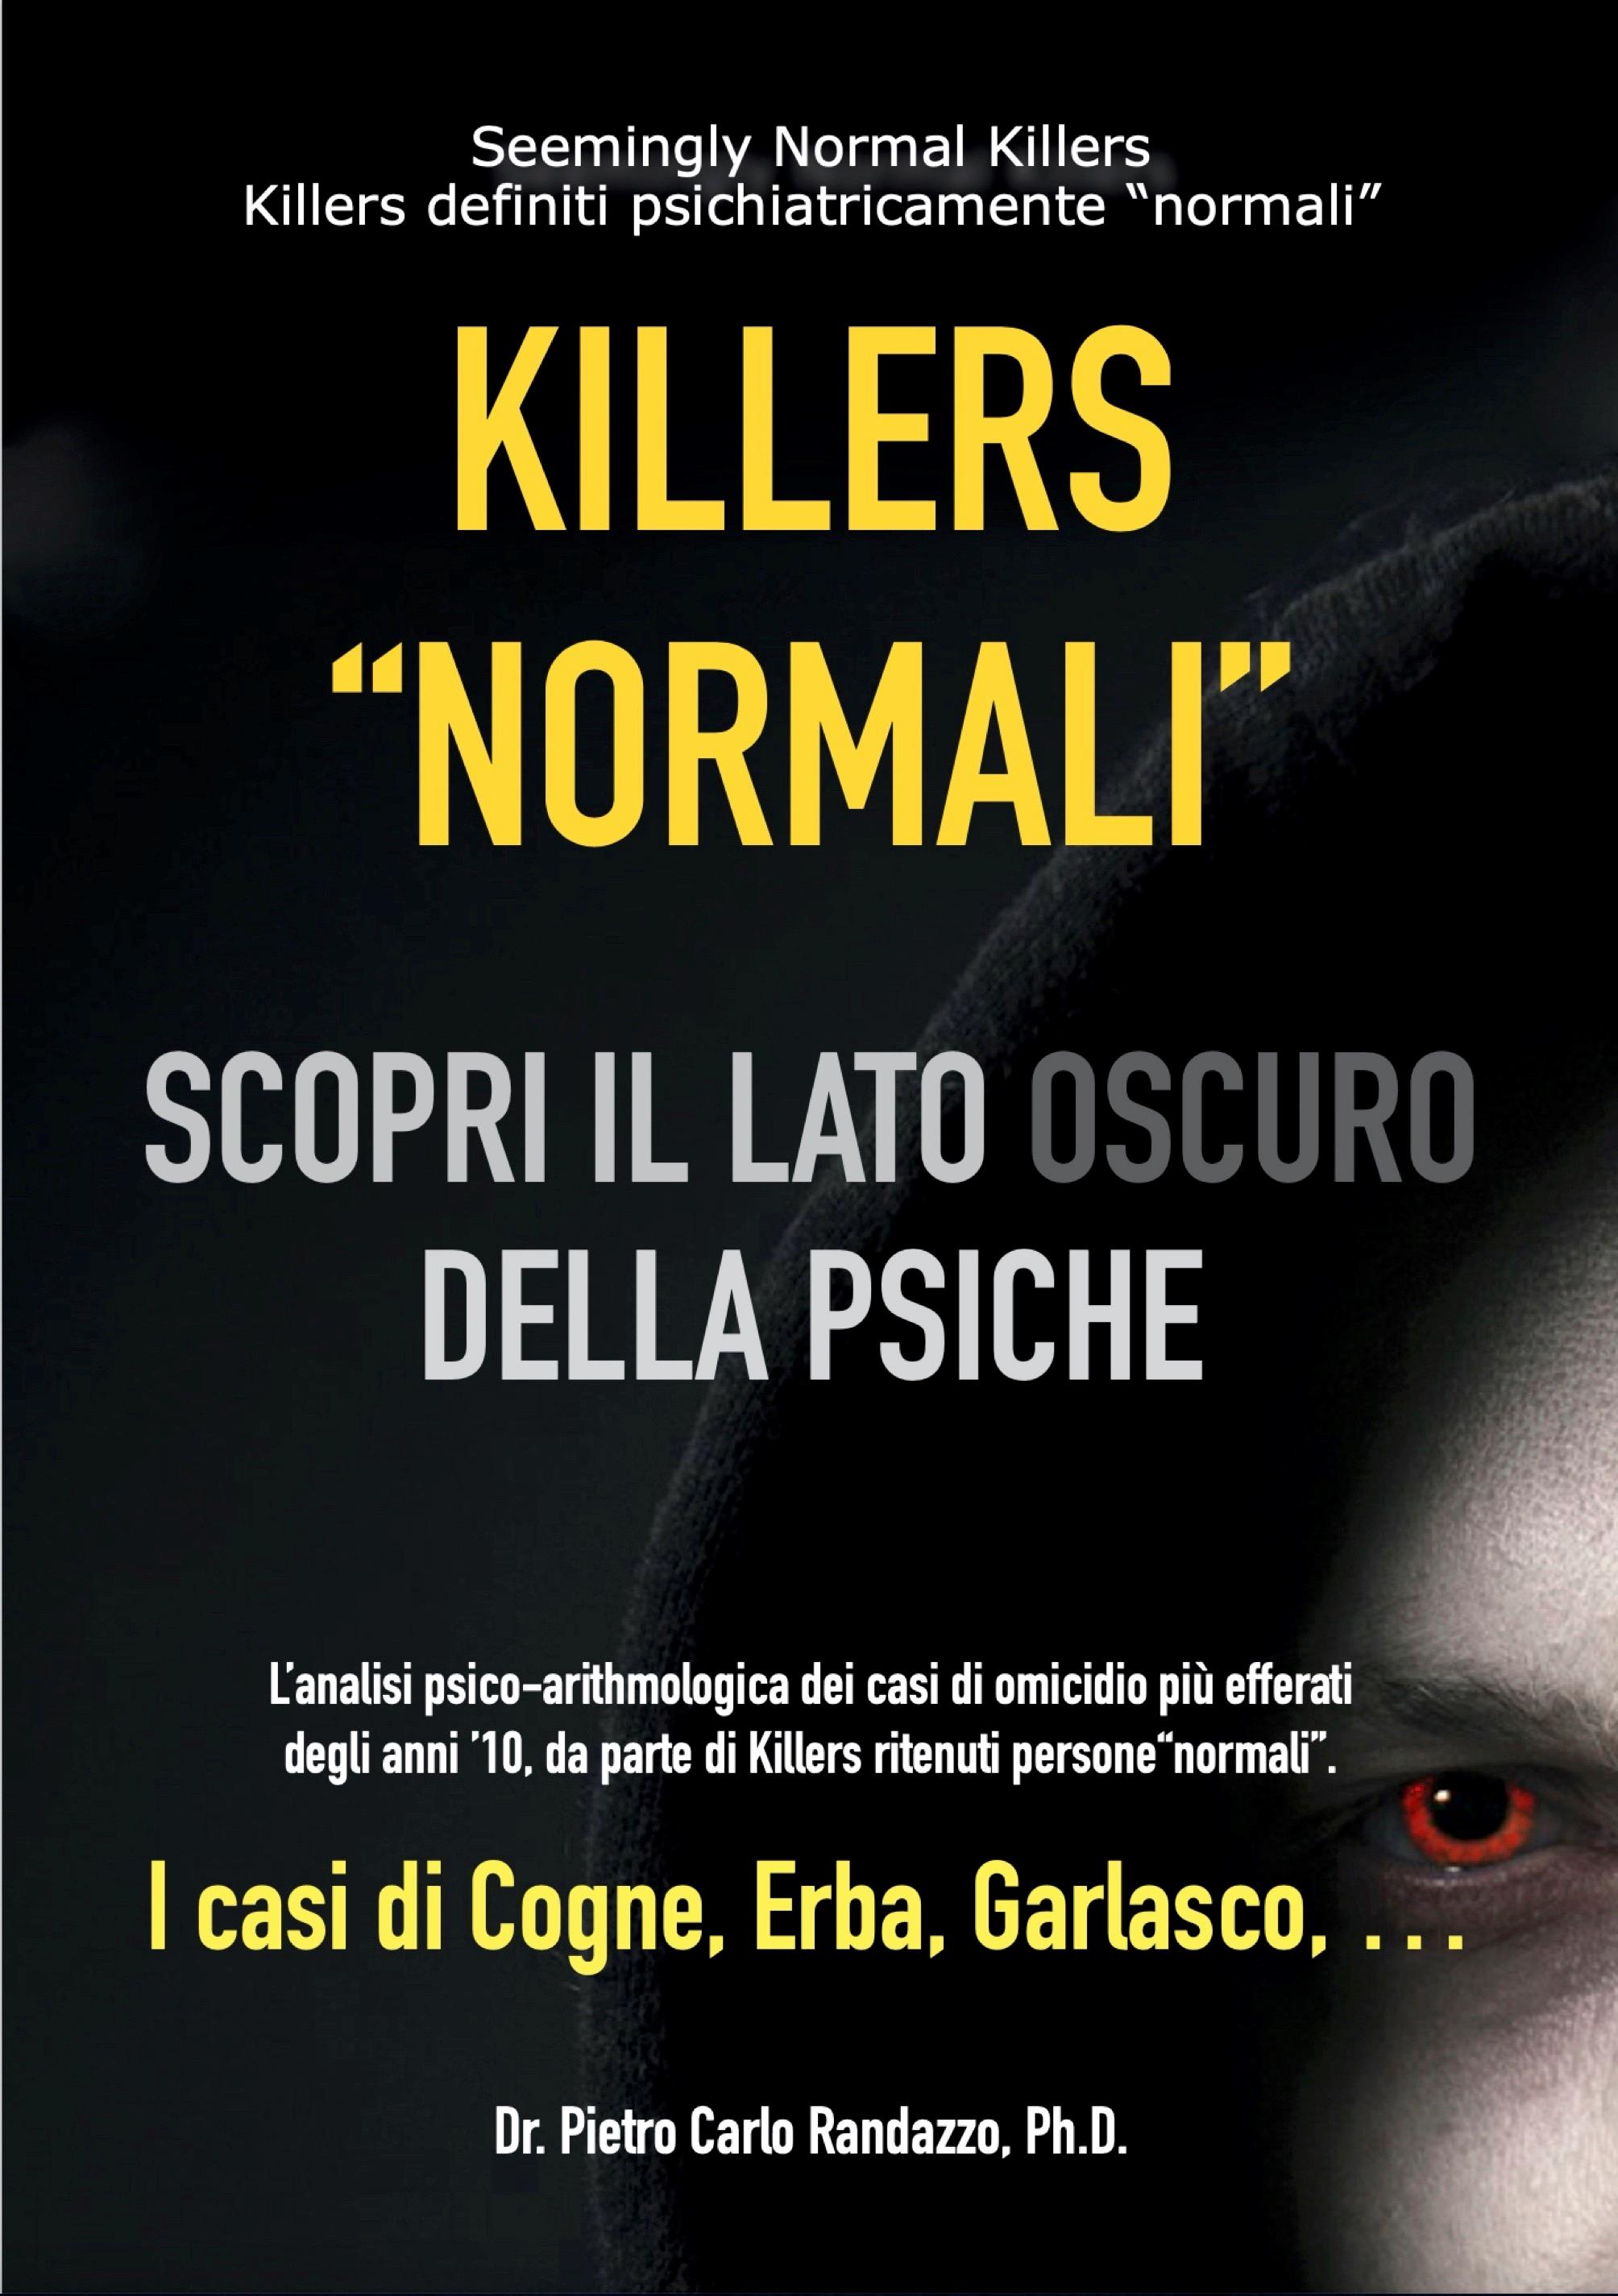 Killers "normali" - scopri